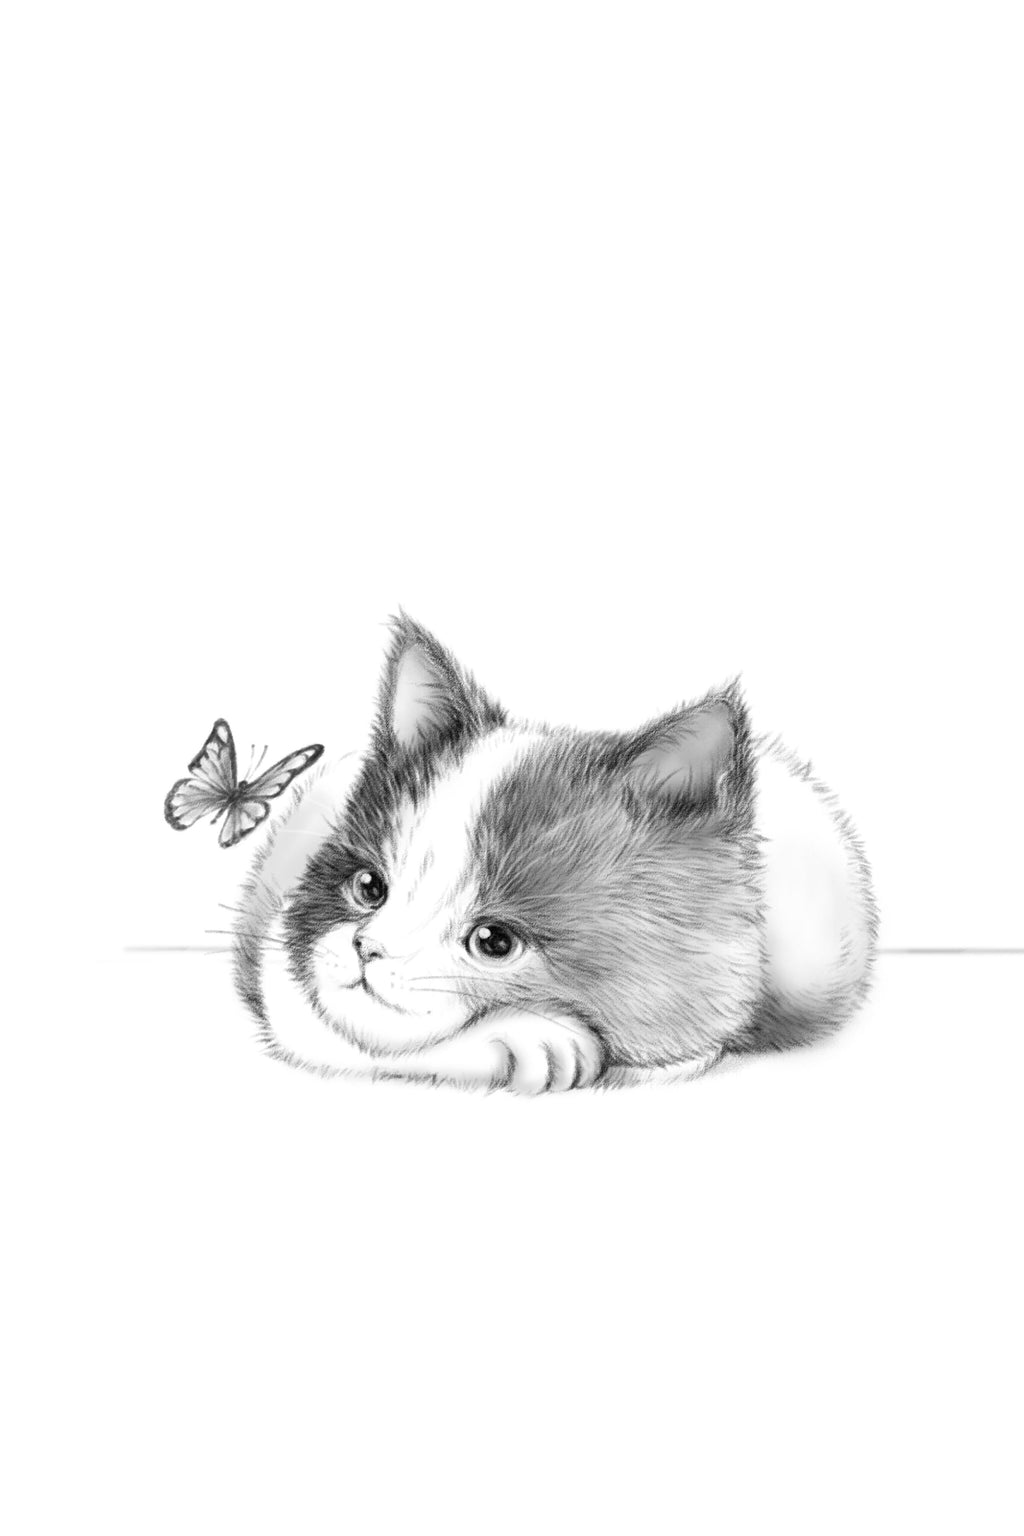 Wandbild-Kindermotiv einer Katze - Schwarz-weiß